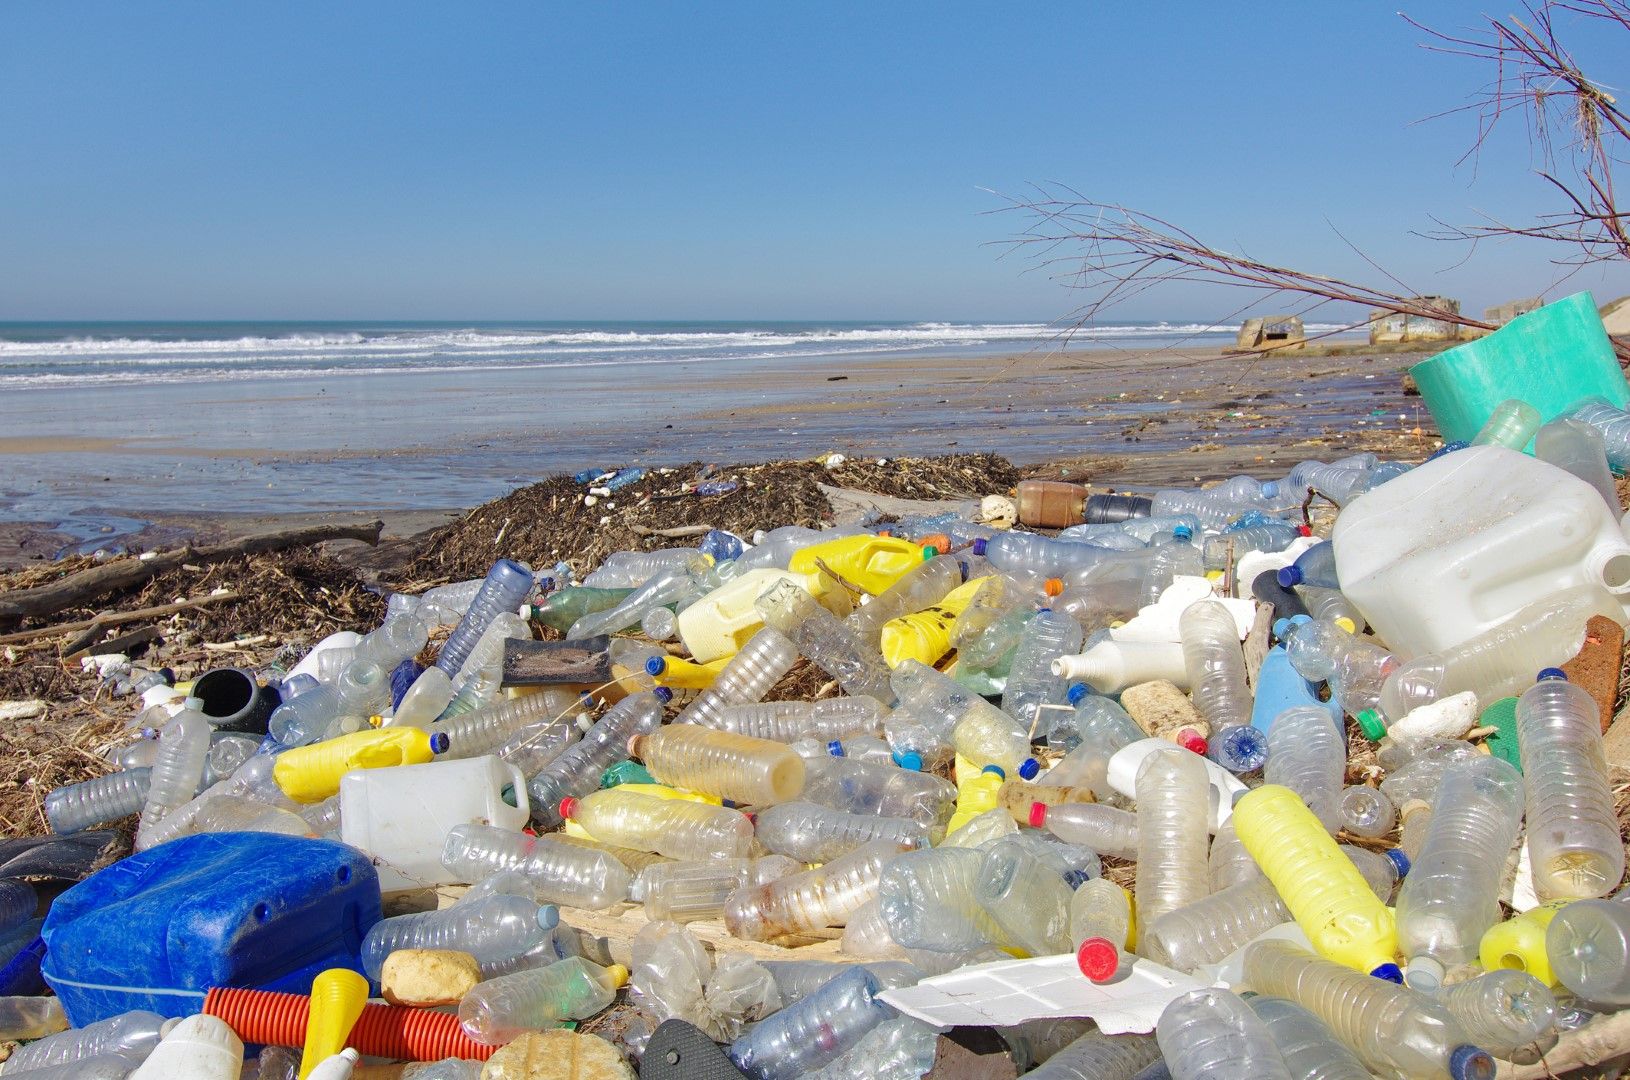  Светът трябва спешно да прекрати замърсяването на океаните с пластмаса, предупреждават еколози